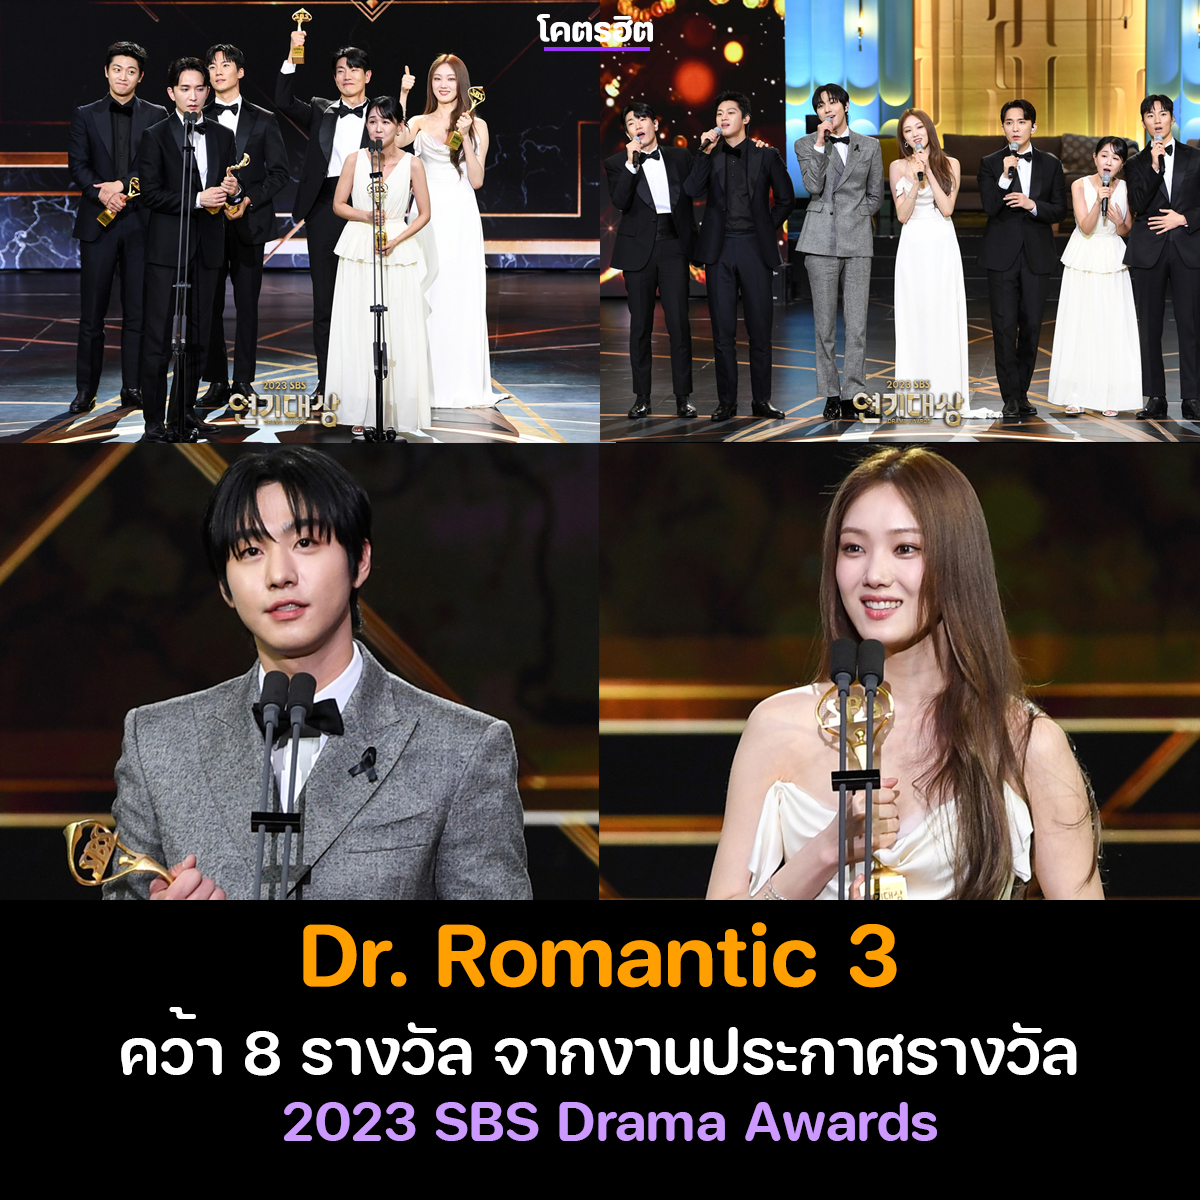 ทีมทลดัม คว้า 8 รางวัล จากงานประกาศรางวัล '2023 SBS Drama Awards' ยินดีกับนักแสดงและทีมงานด้วยนะคะ 

Dr. Romantic 3
🏆 รางวัลทีมนักแสดงยอดเยี่ยม
🏆 อันฮโยซอบ - รางวัลนักแสดงชายยอดเยี่ยม (ซีรีส์ยาวหลายซีซัน)
🏆 อีซองคยอง - รางวัลนักแสดงหญิงยอดเยี่ยม (ซีรีส์ยาวหลายซีซัน)
🏆…